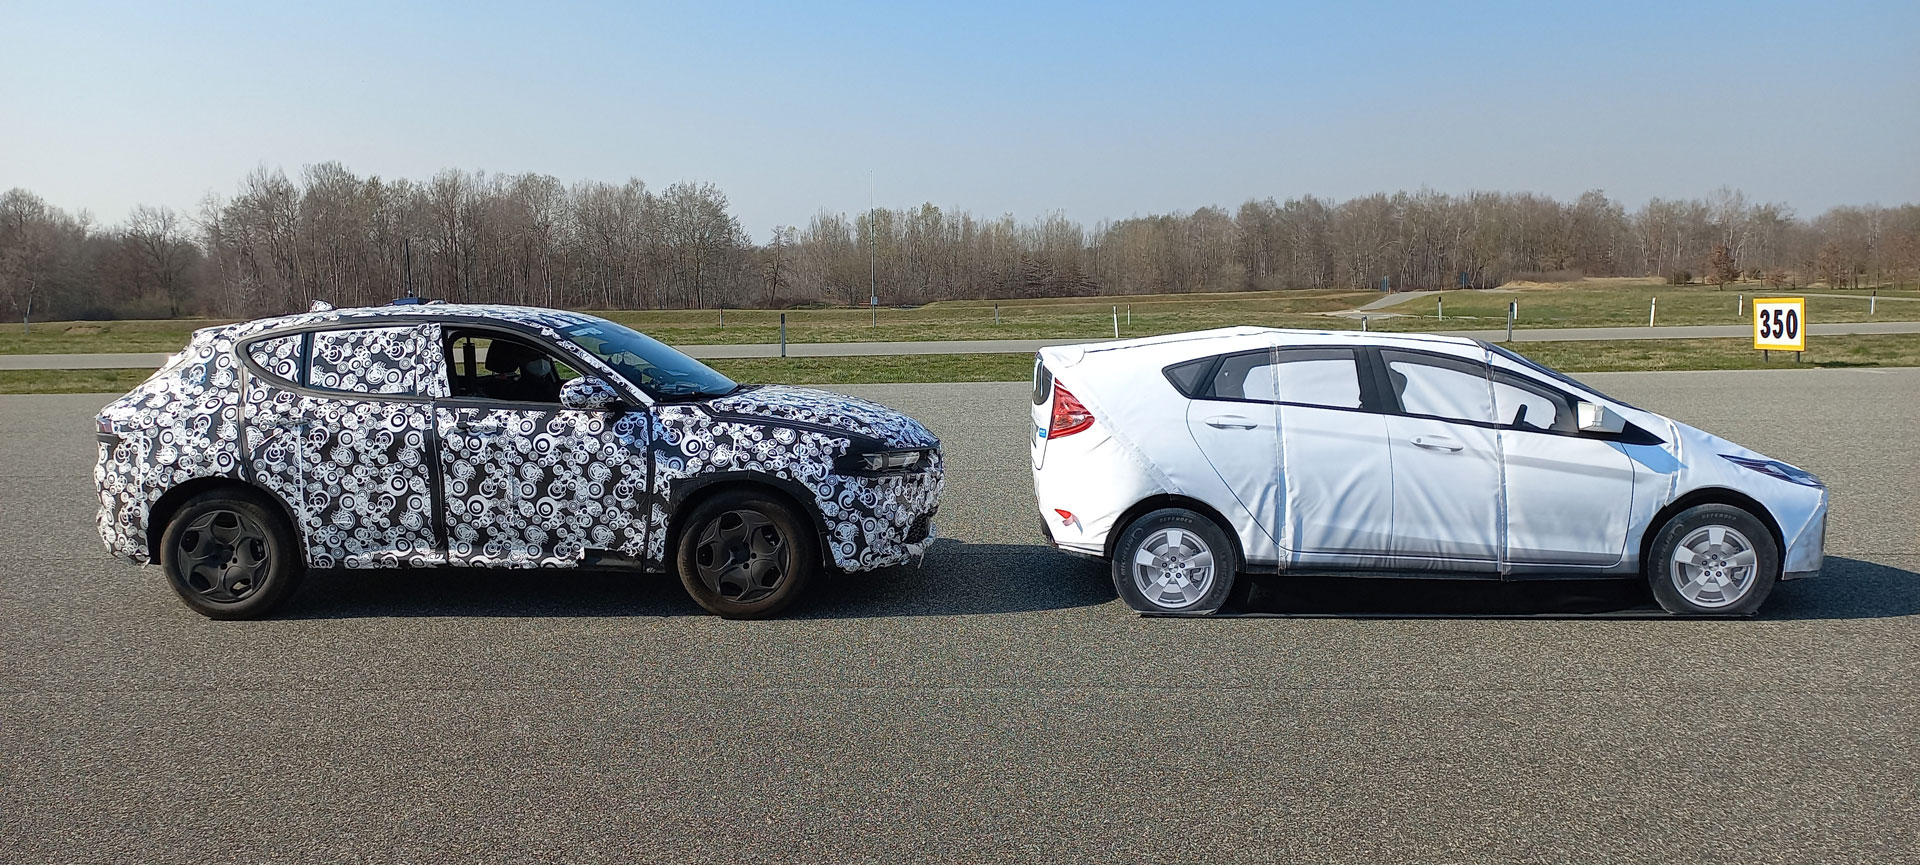 Foto di due automobili che devono essere testate